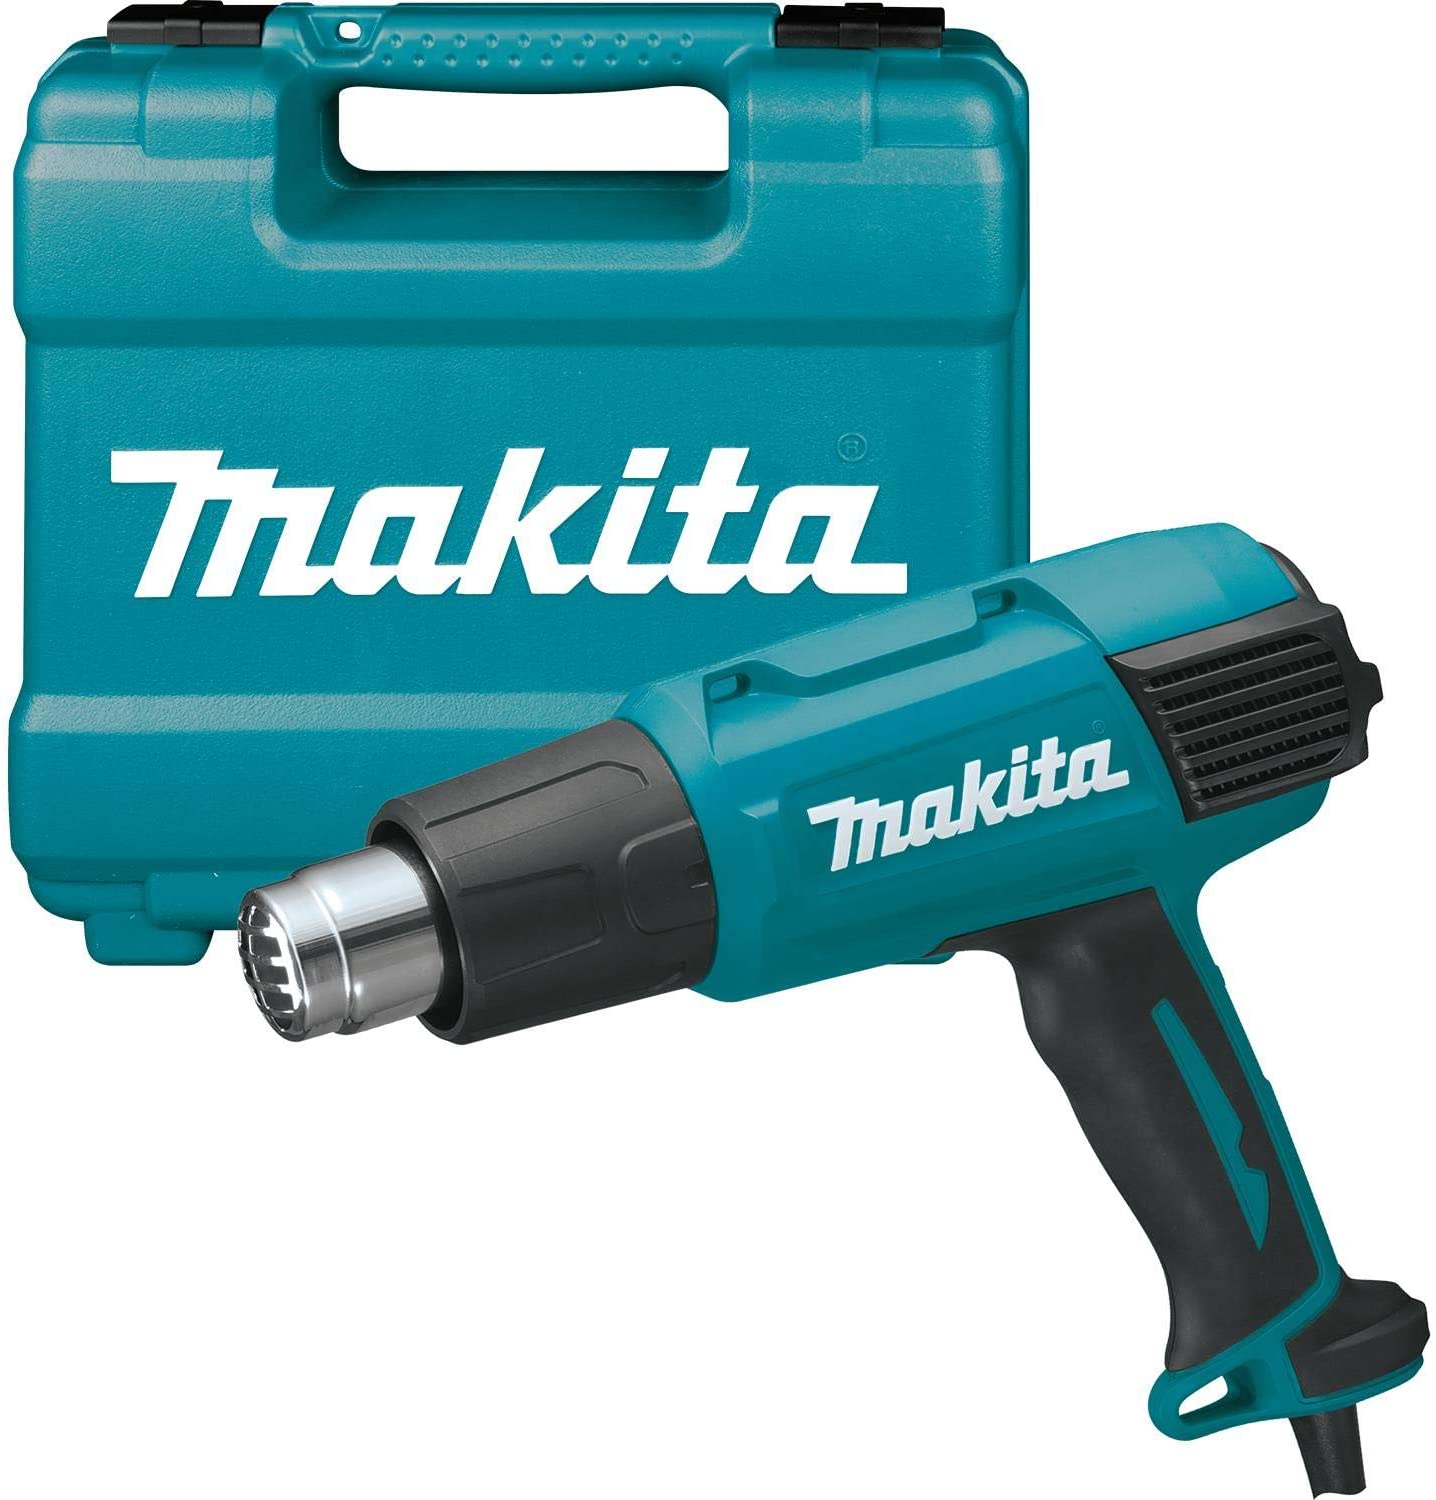 マキタ(makita) HG6031VK ヒートガン 9段階温度調節 熱風温度50-550度 プロ仕様のヒー